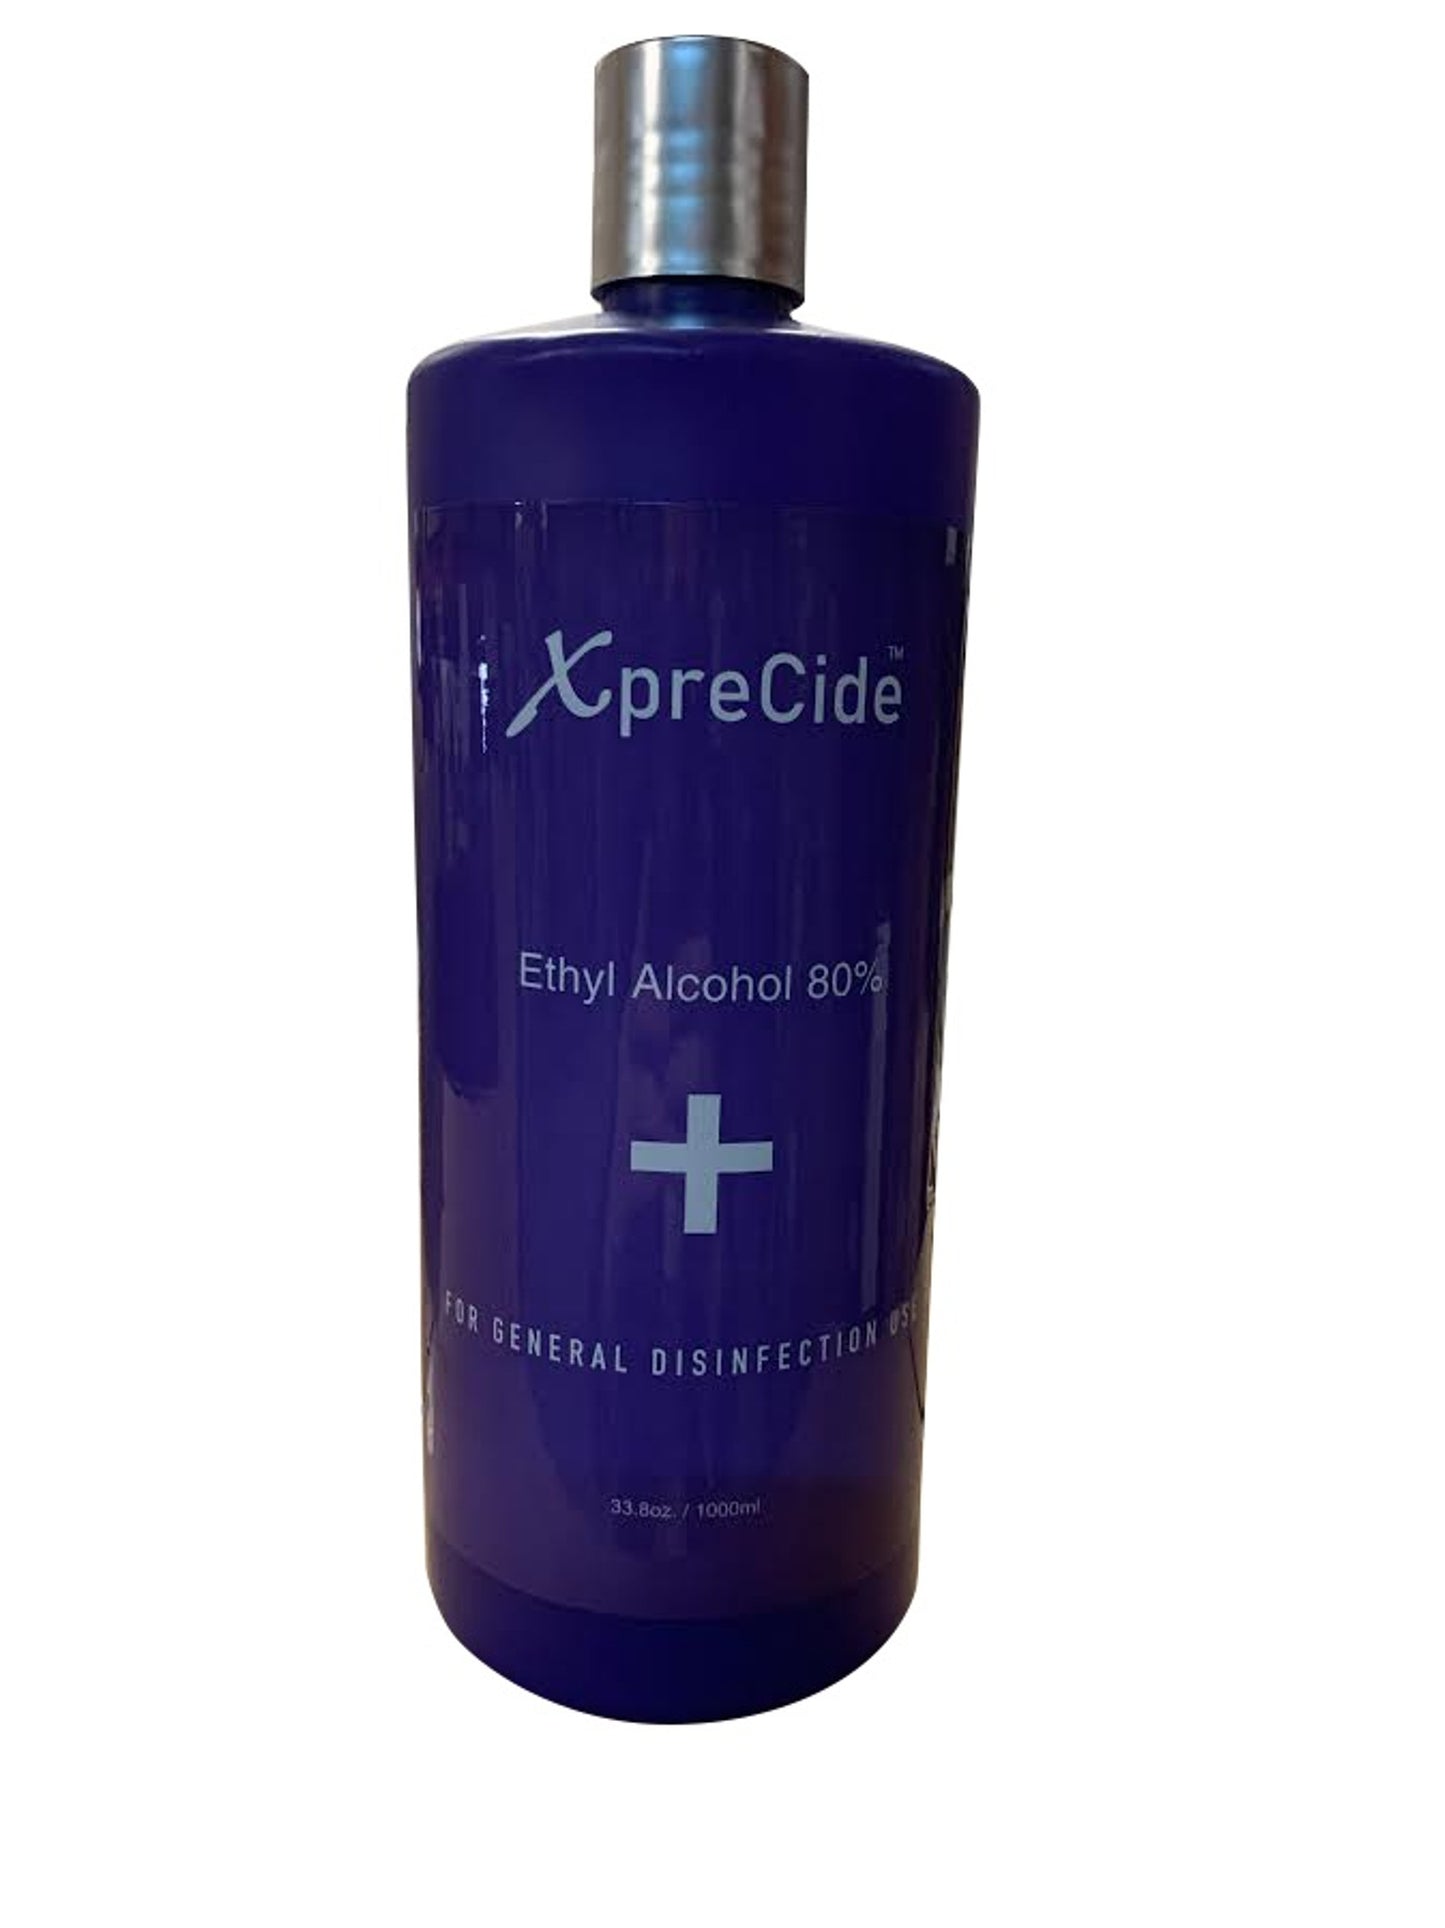 XpreCide Ethyl Alcohol 80% - 33.8oz